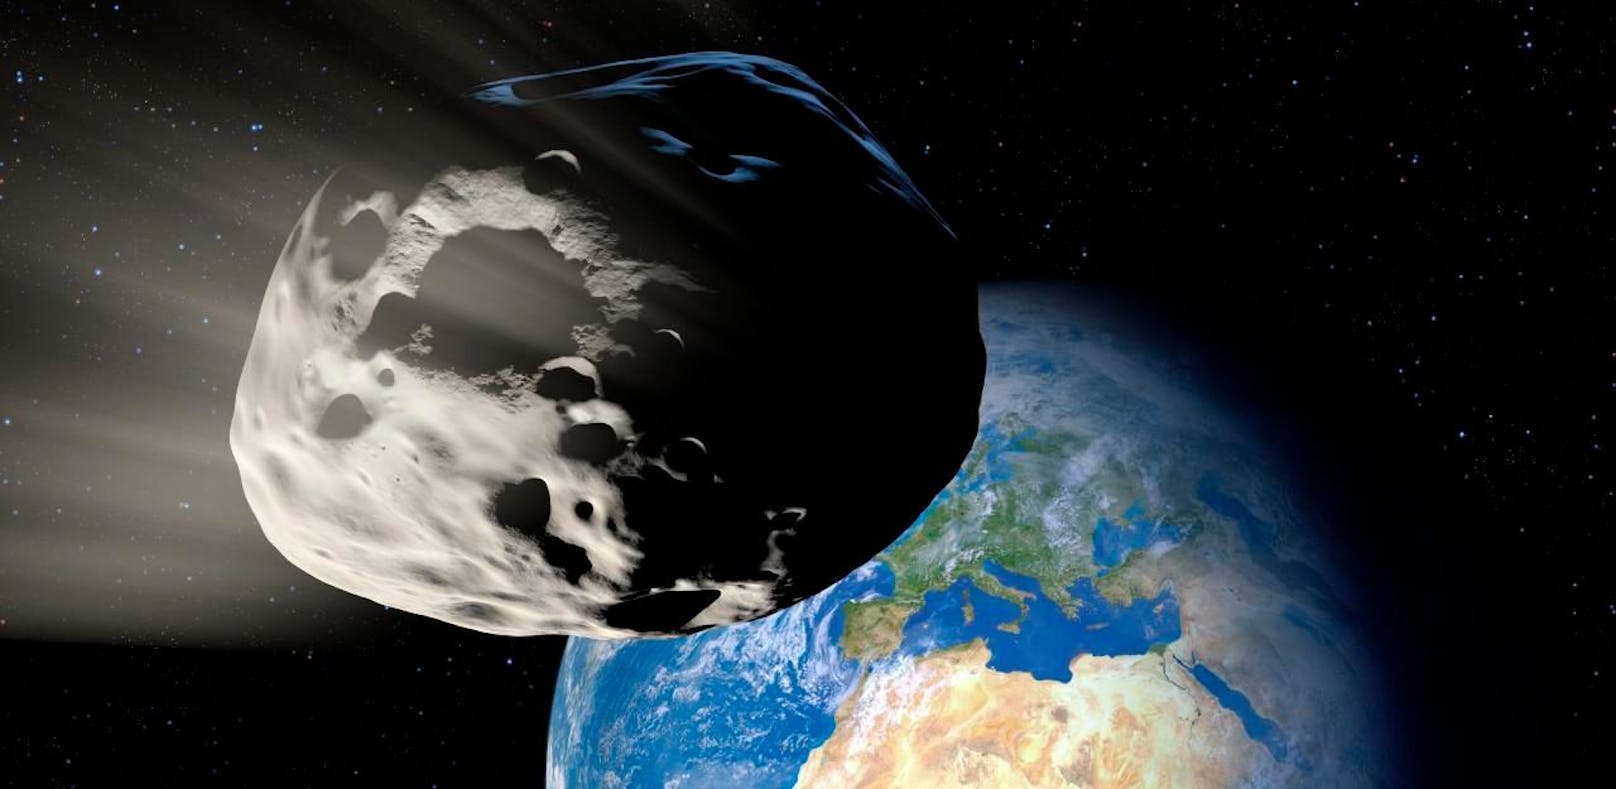 Der Asteroid kommt der Erde so nah wie schon lange keiner mehr.